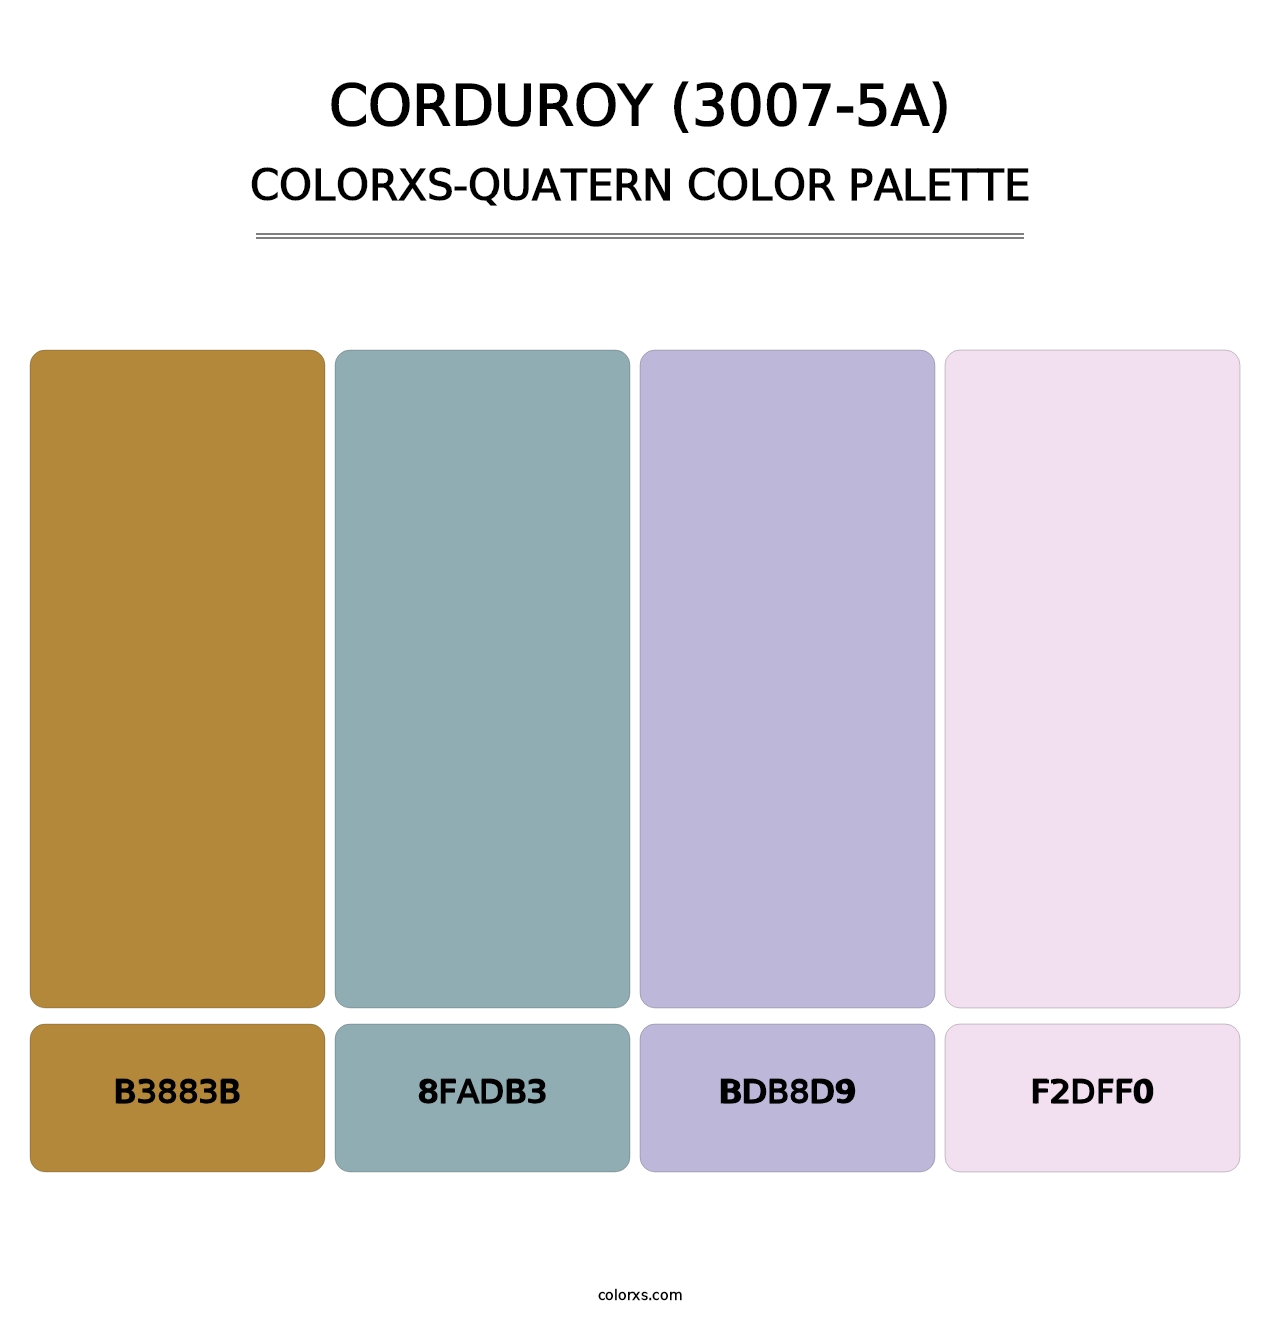 Corduroy (3007-5A) - Colorxs Quatern Palette